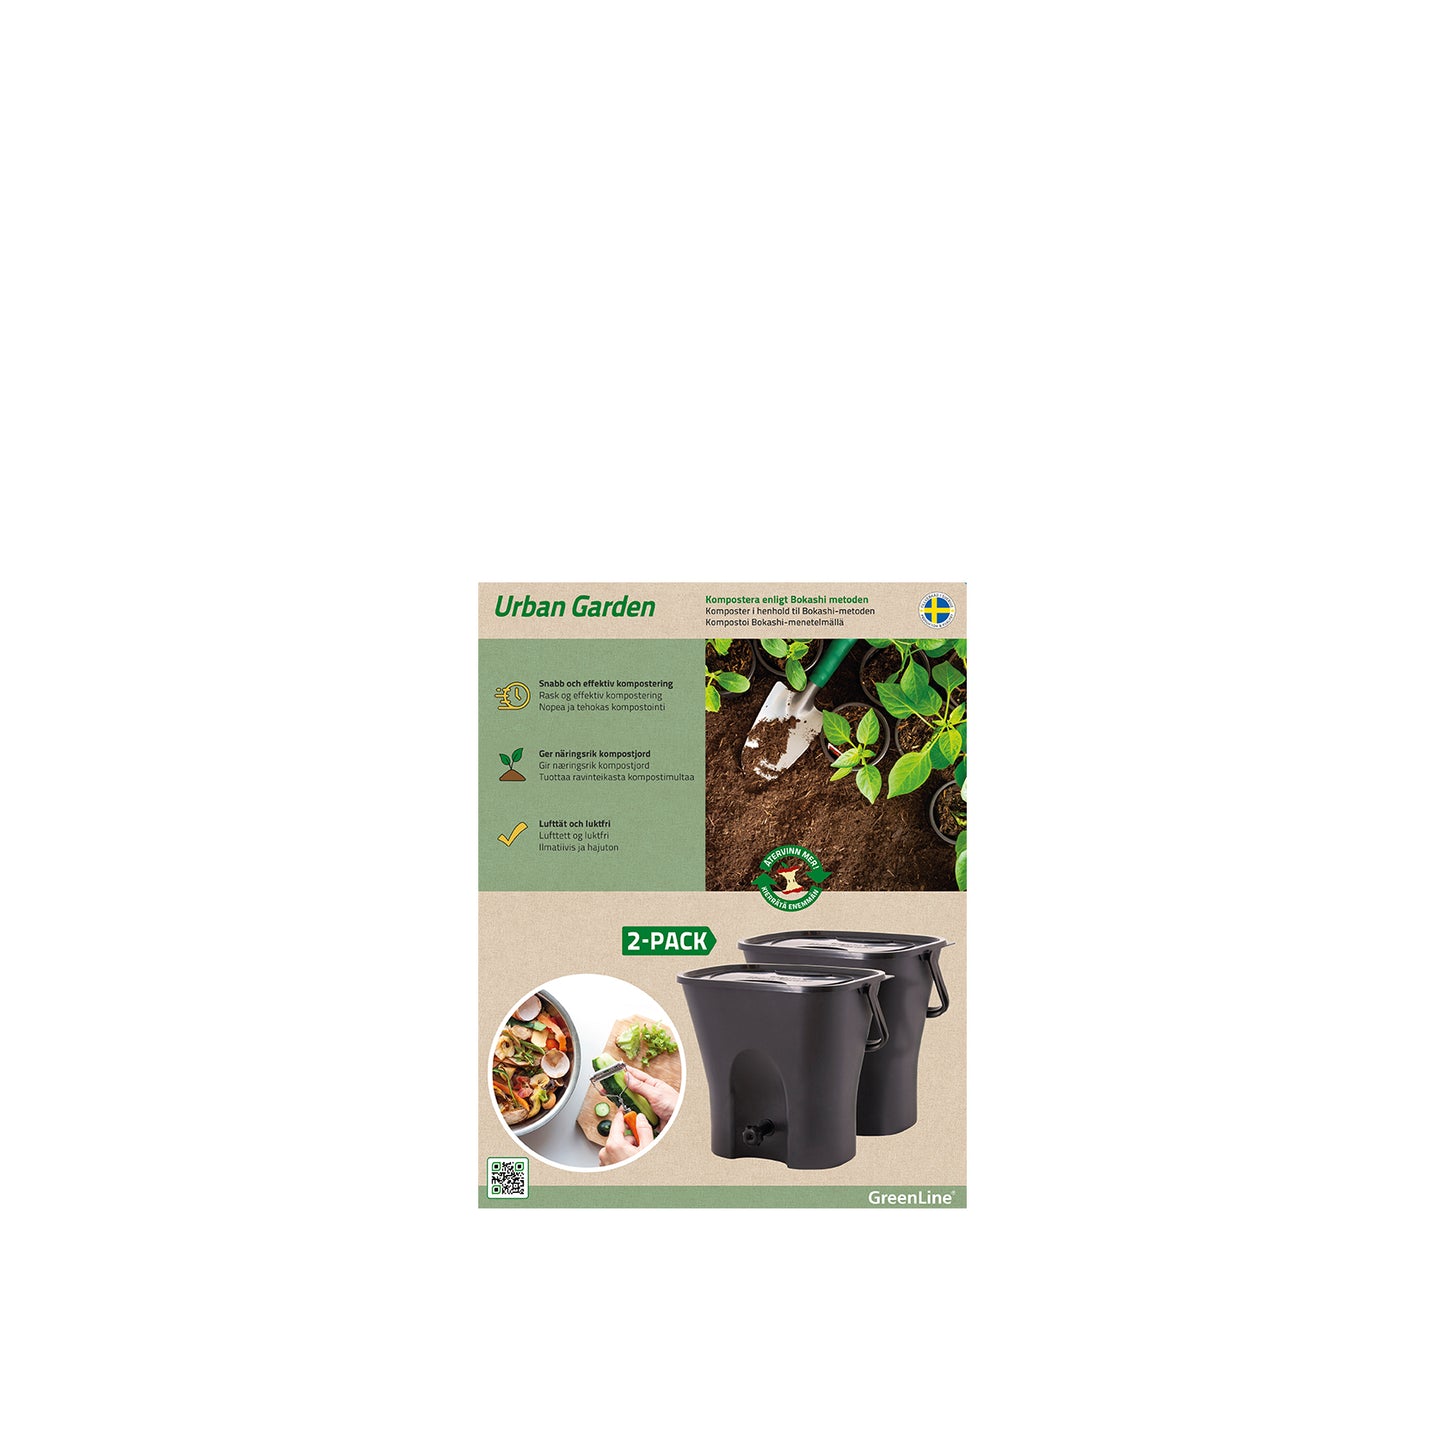 Kitchen compost Urban Garden 2.0 2-pack 